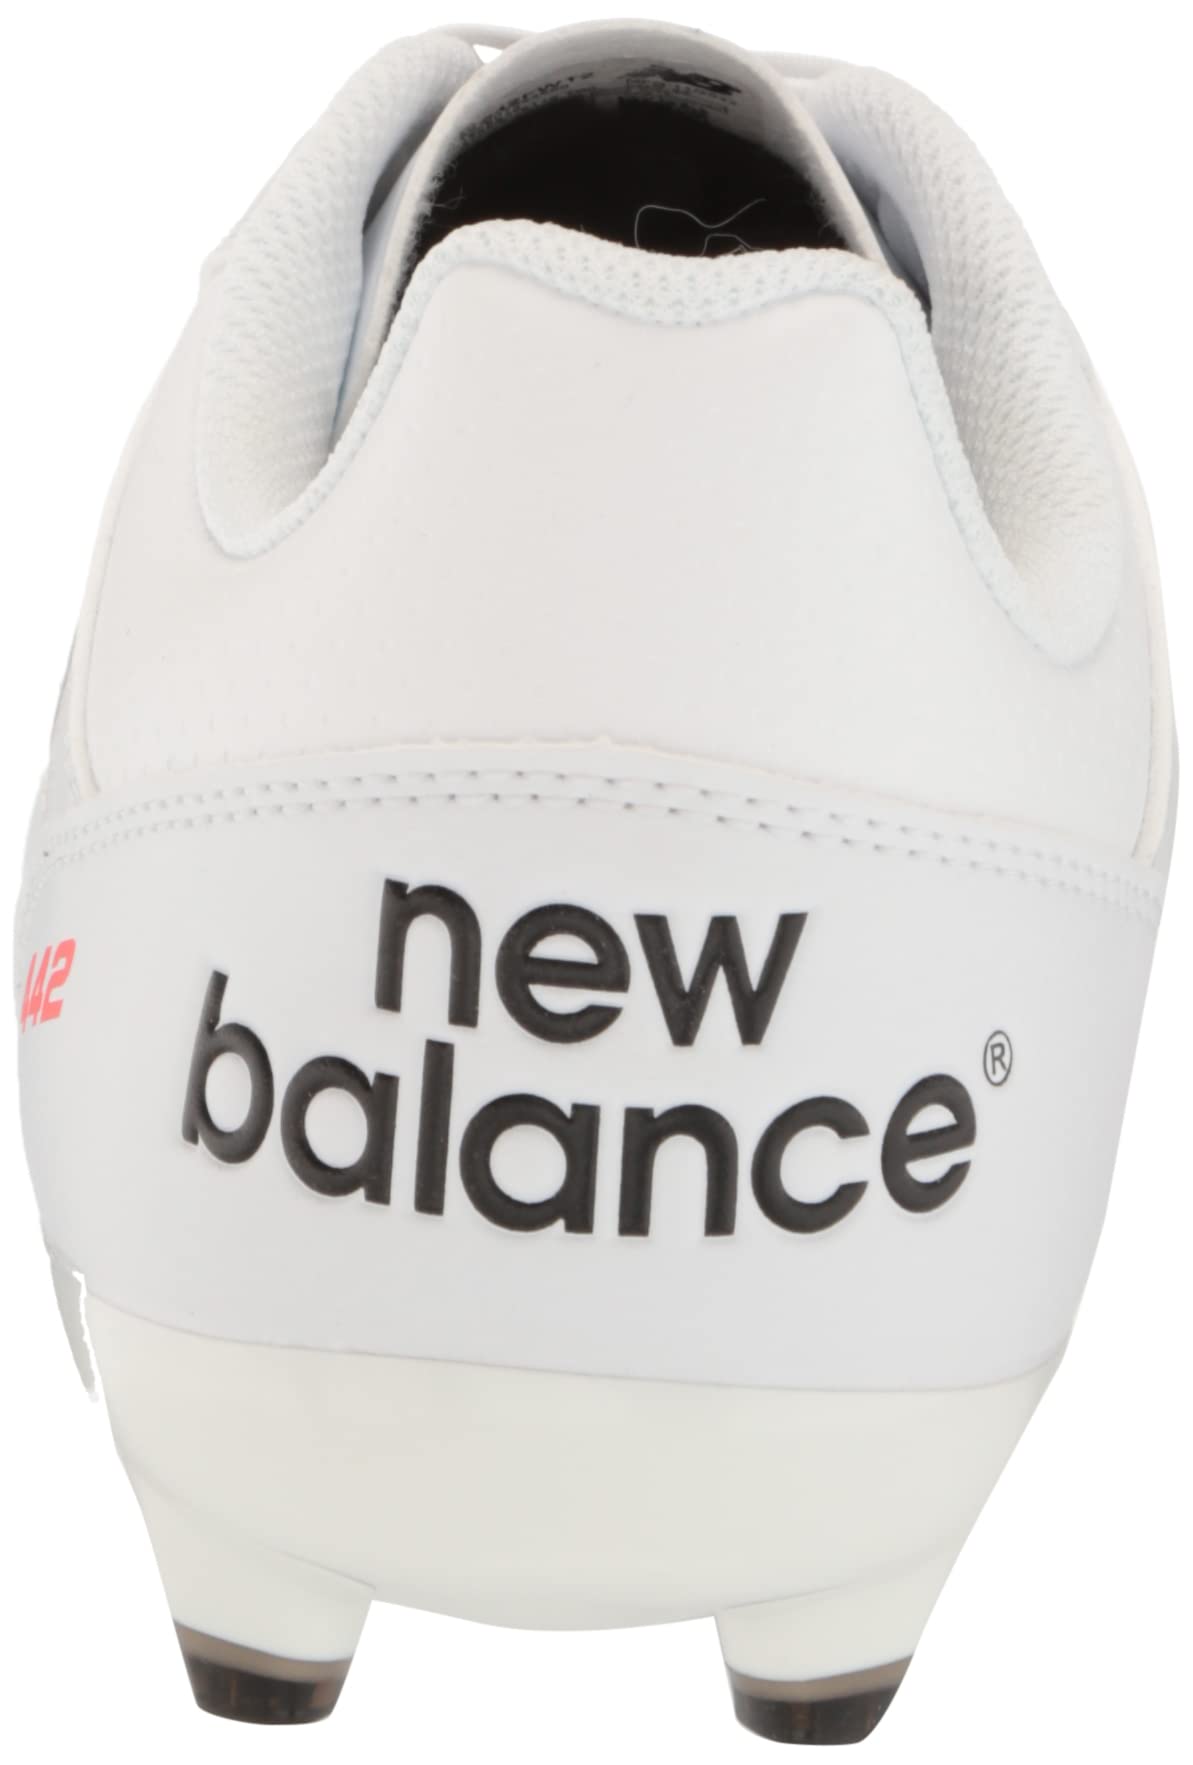 New Balance Men's 442 V2 Team Fg Soccer Shoe